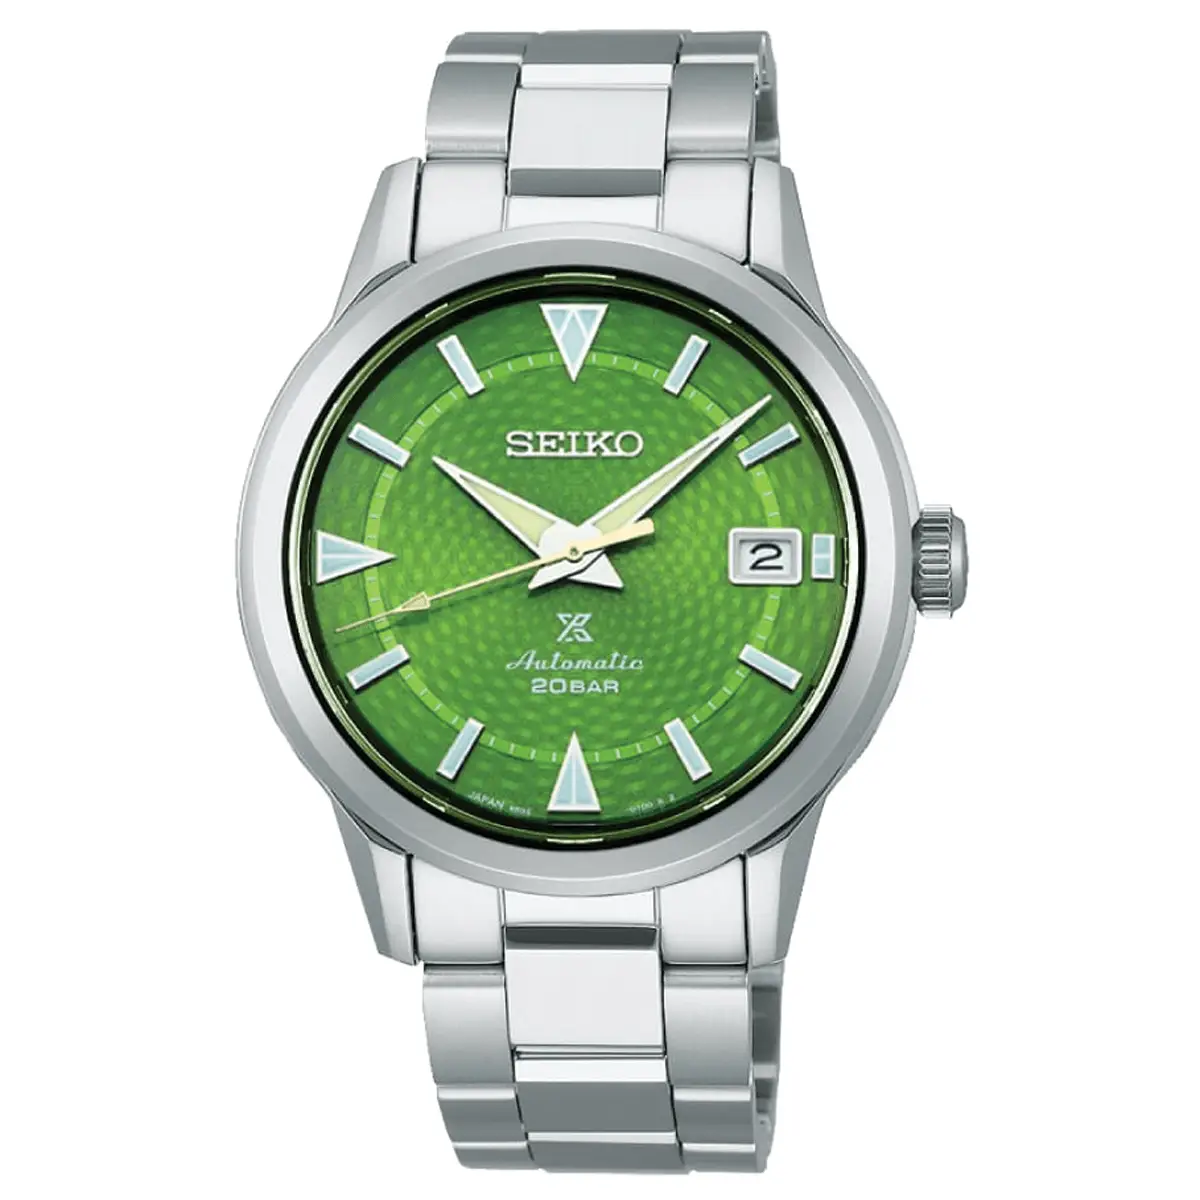 Đồng hồ Seiko Prospex Alpinist Save Forest Bamboo Grove Limited Edition SPB435J mặt số màu xanh. Dây đeo bằng thép. Thân vỏ bằng thép.